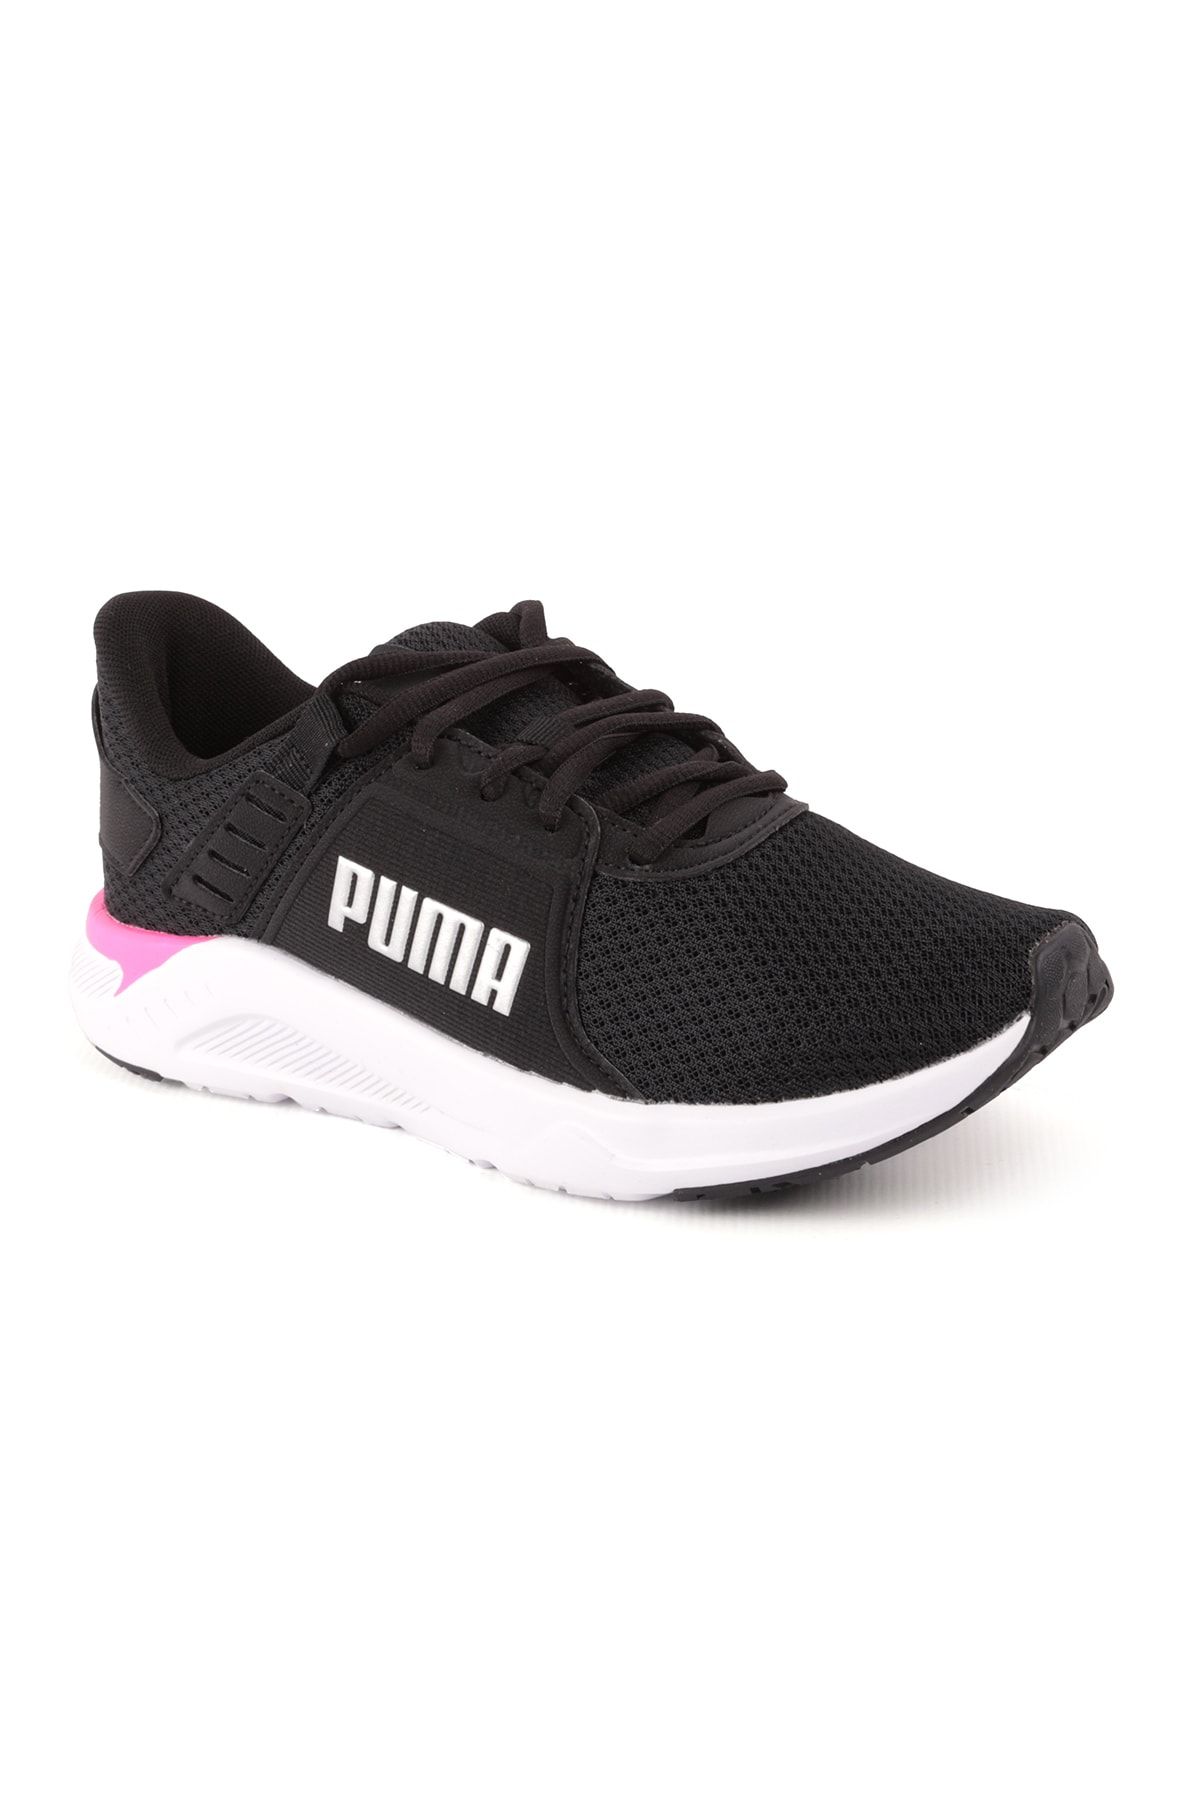 Puma Ftr Connect Kadın Spor Ayakkabı Siyah Pembe